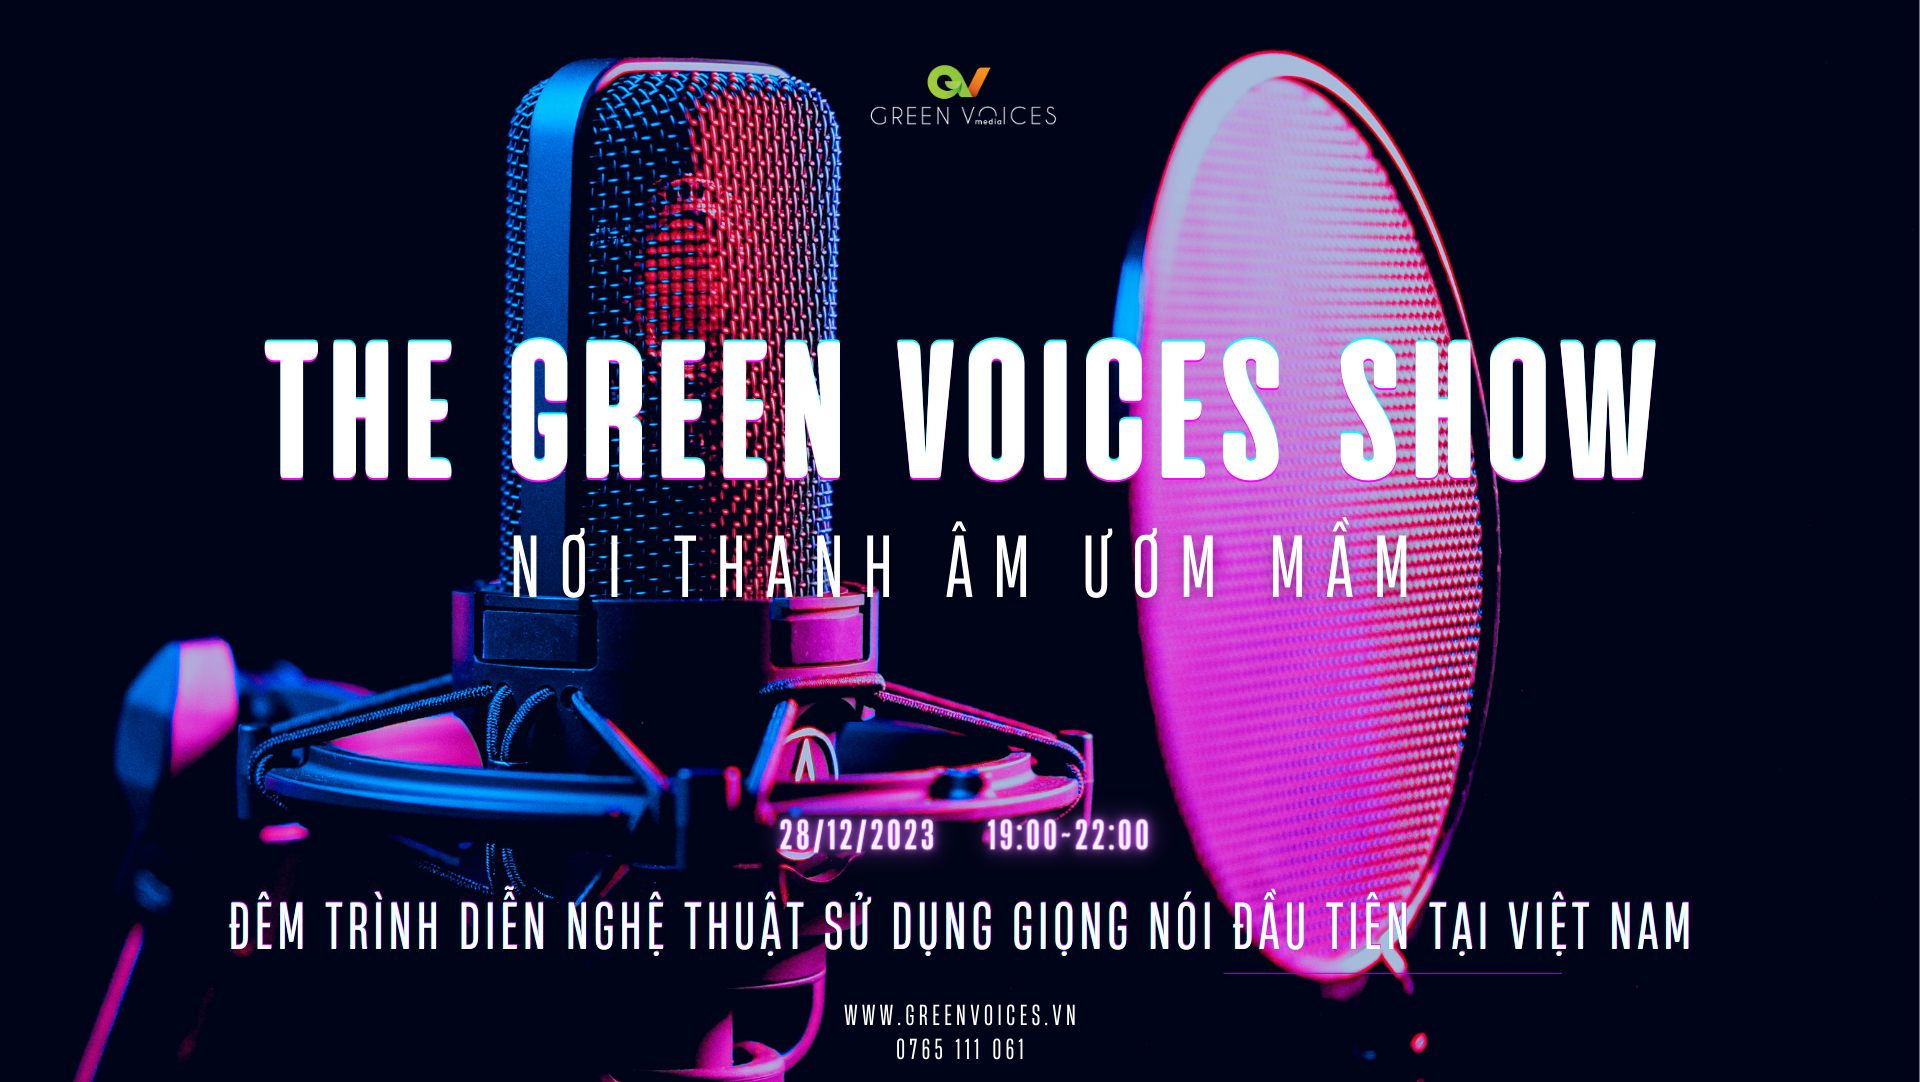 THE GREEN VOICES SHOW - "Nơi thanh âm ươm mầm" - SHOW BIỂU DIỄN GIỌNG NÓI ĐẶC BIỆT VÀ DUY NHẤT 2023 TỪ GREEN VOICES.